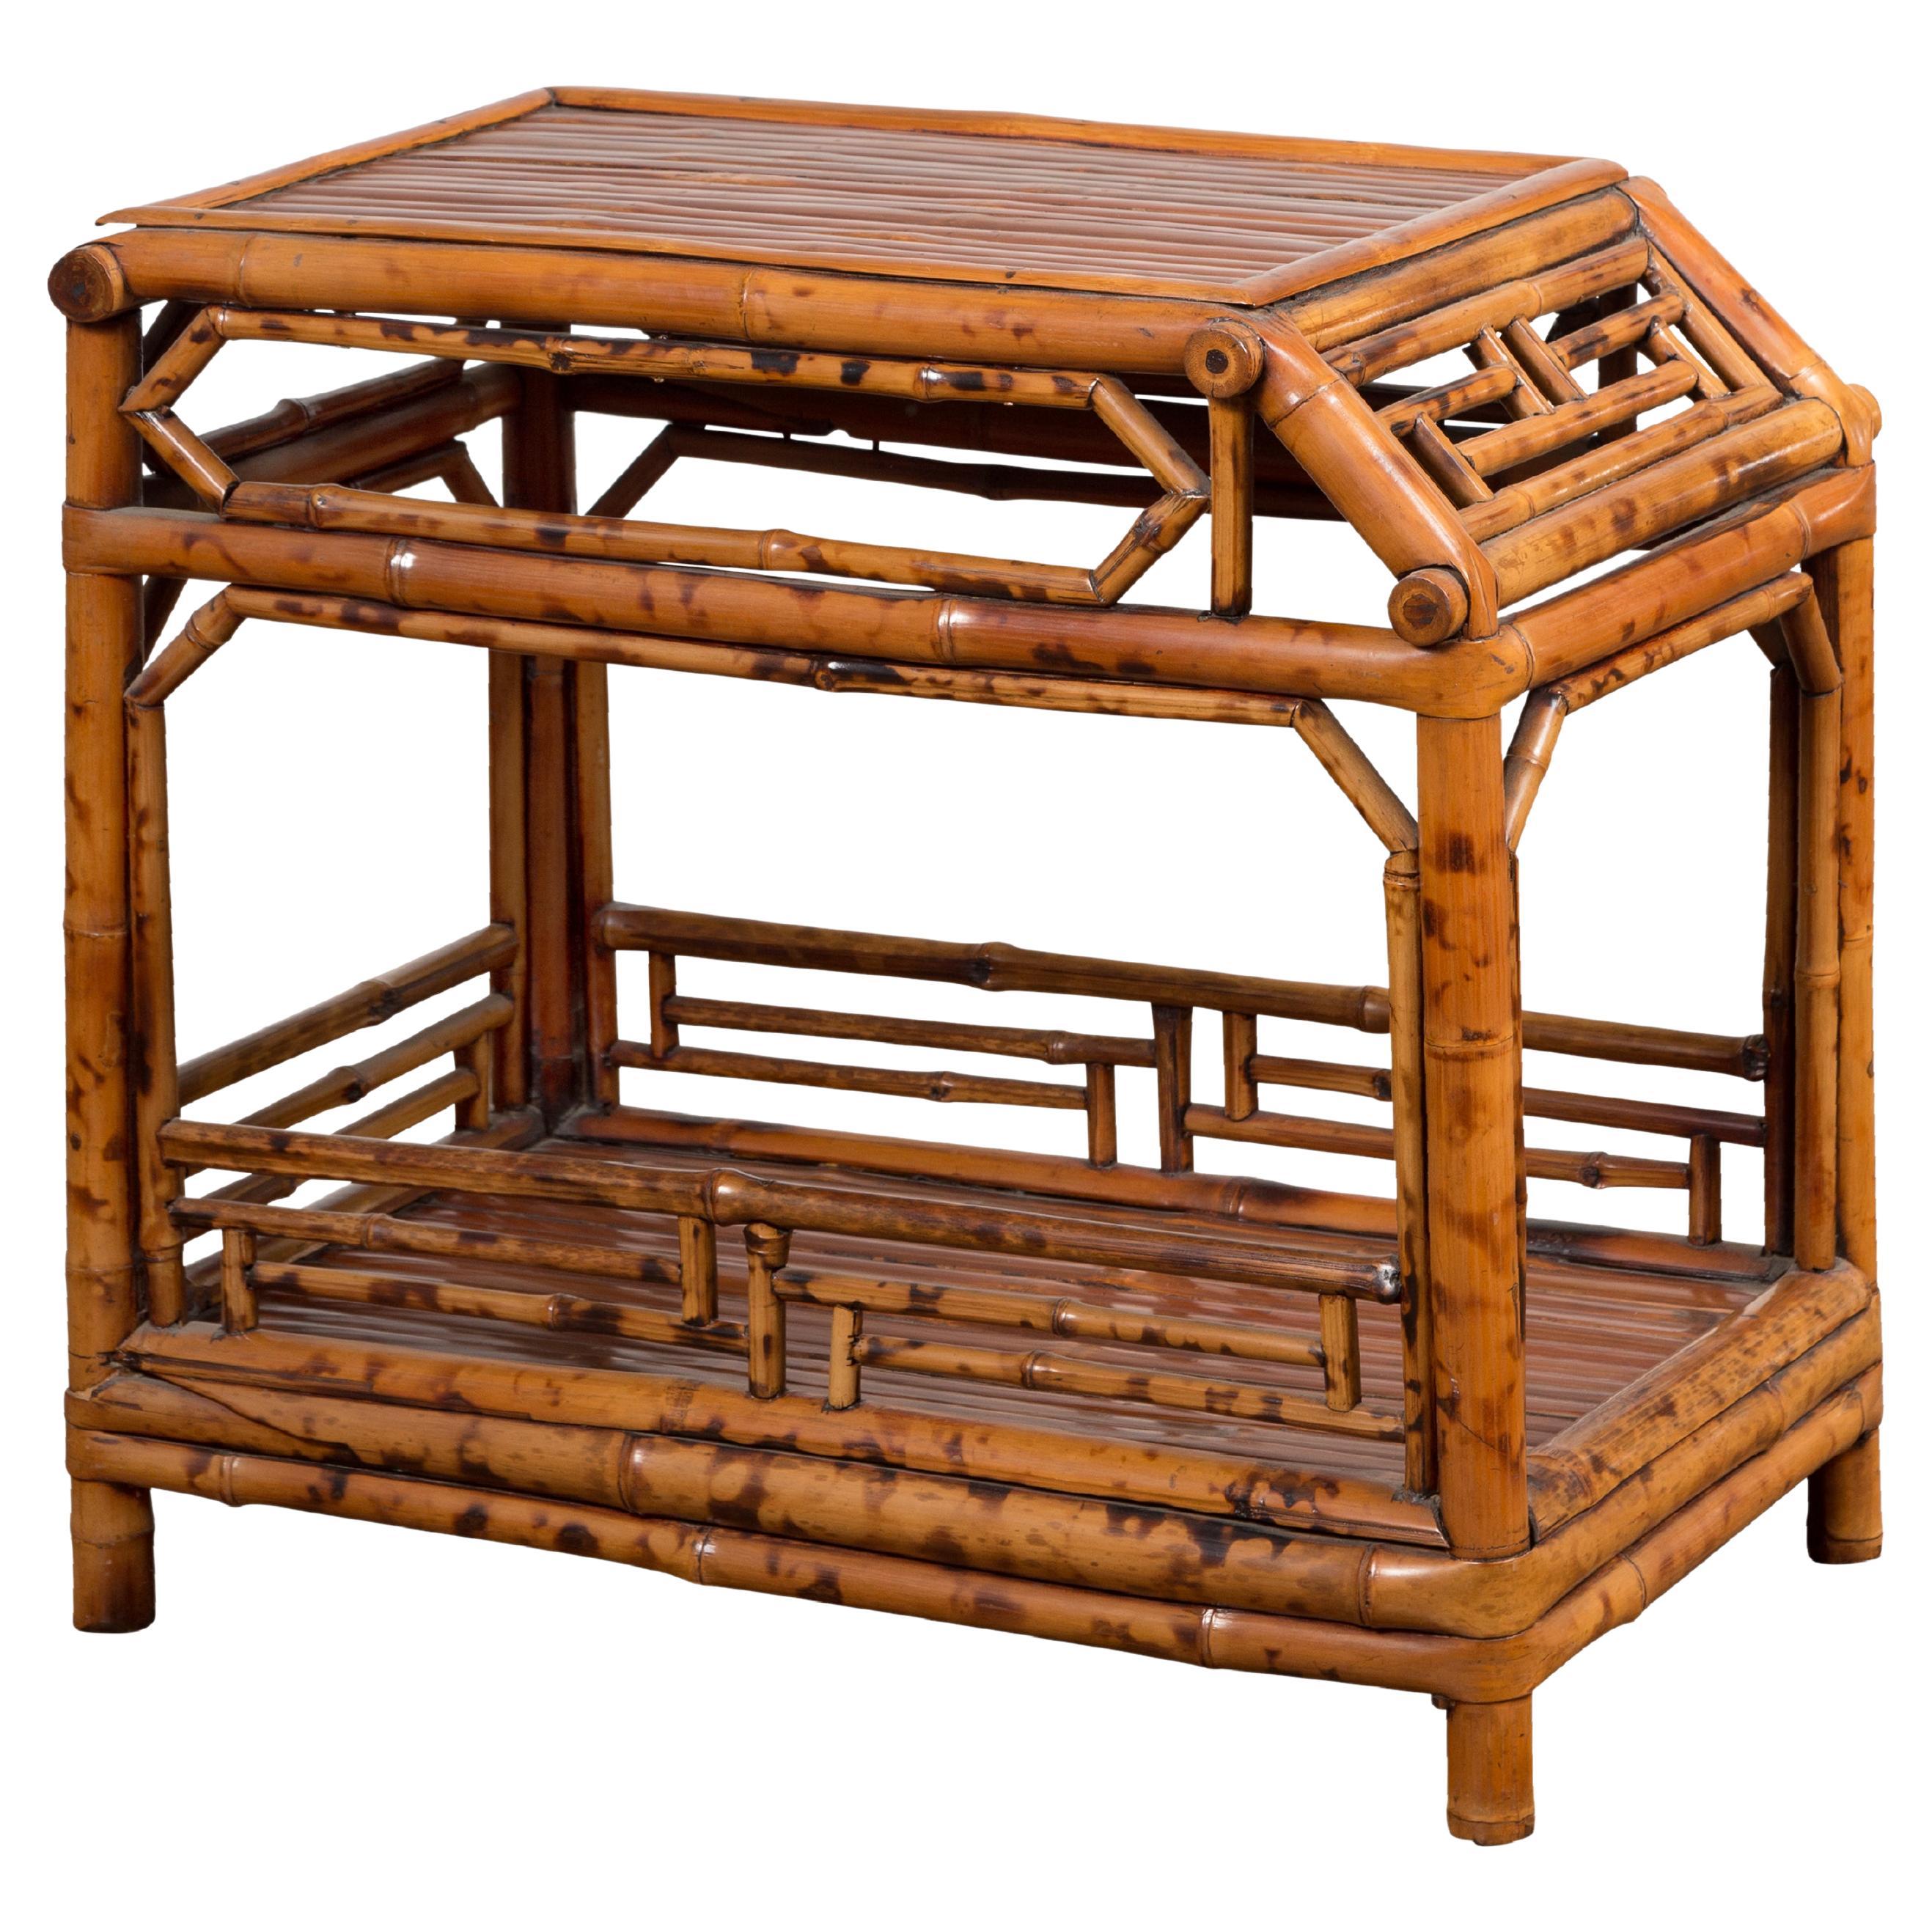 Table d'appoint vintage en bambou avec rangement à l'avant et à l'arrière incliné